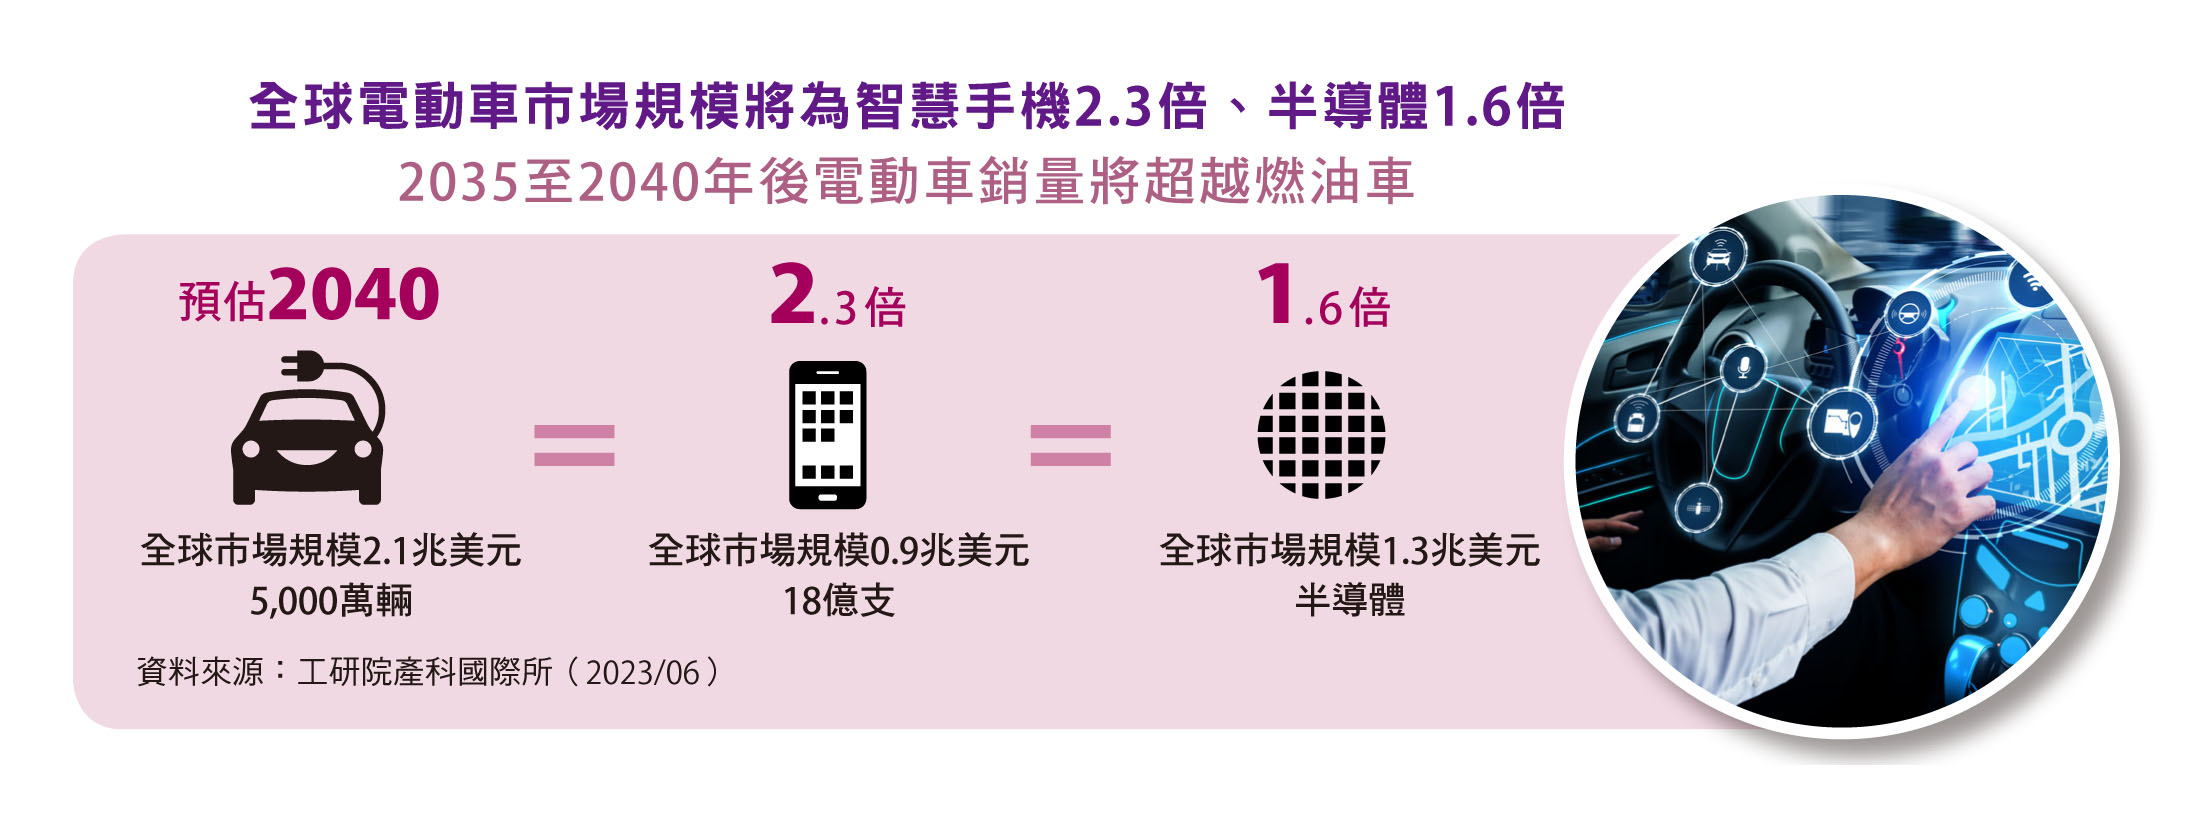 全球電動車市場規模將為智慧手機2.3倍、半導體1.6倍。